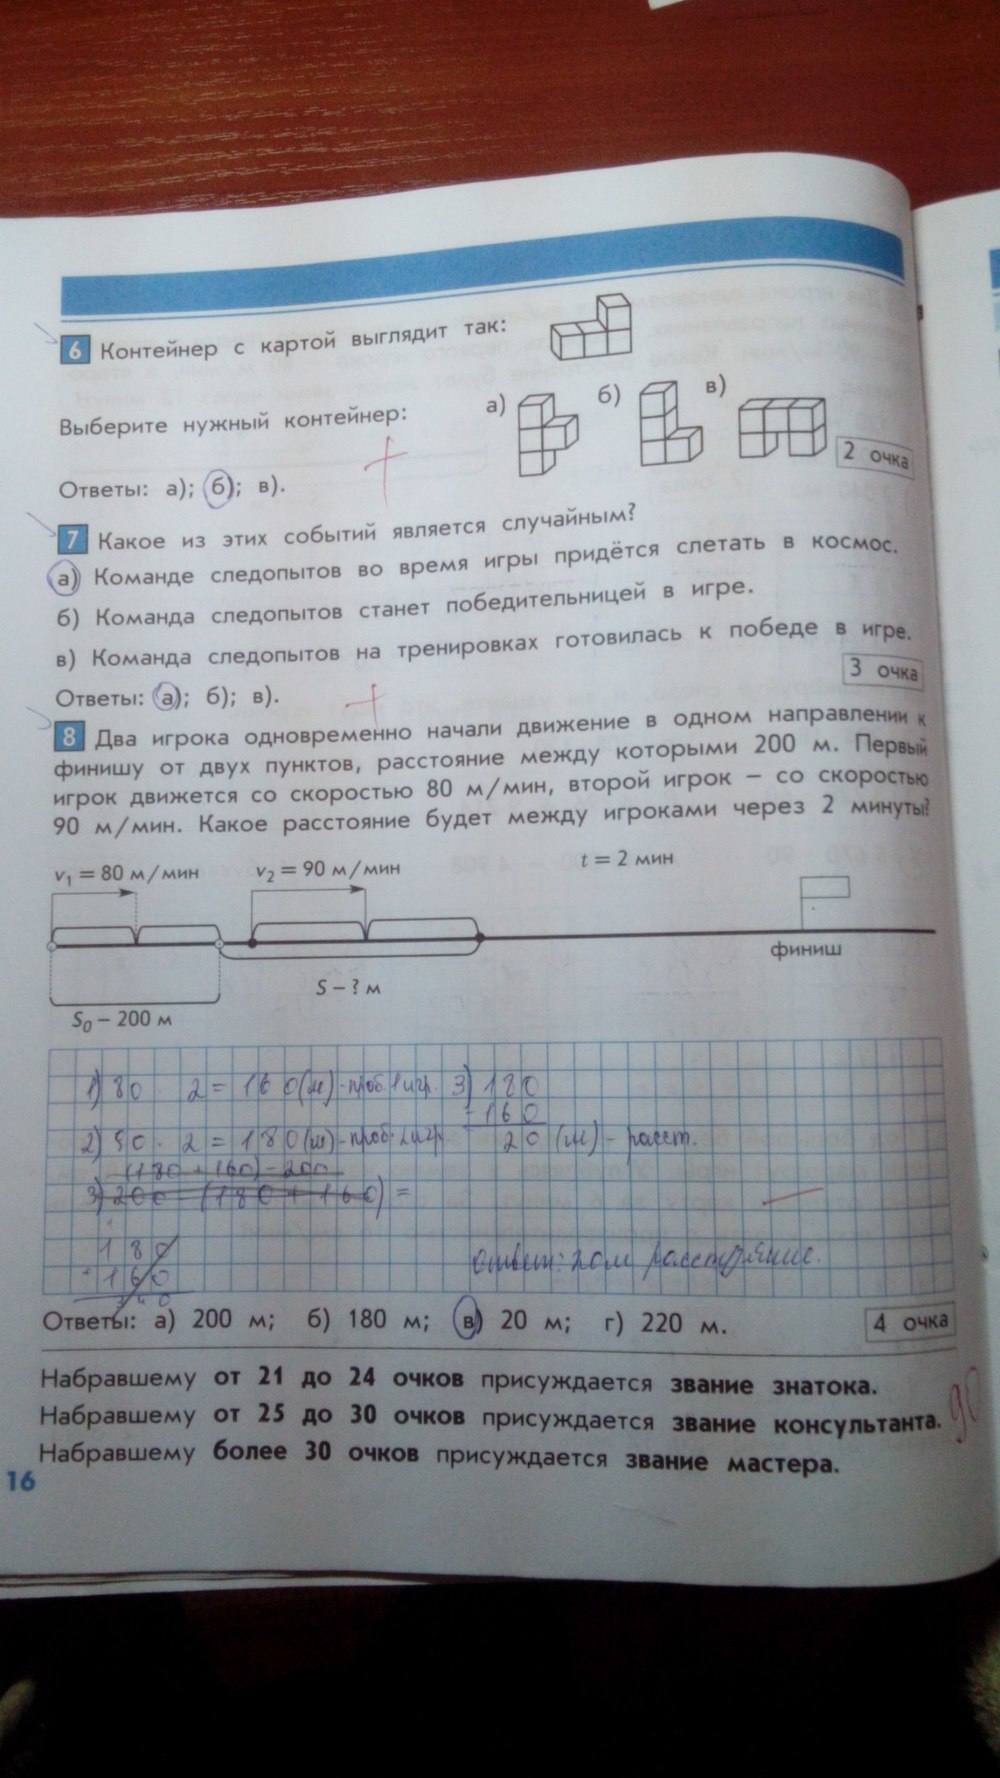 Тесты и контрольные работы, 4 класс, Козлова, Рубин, 2011, задание: стр. 16